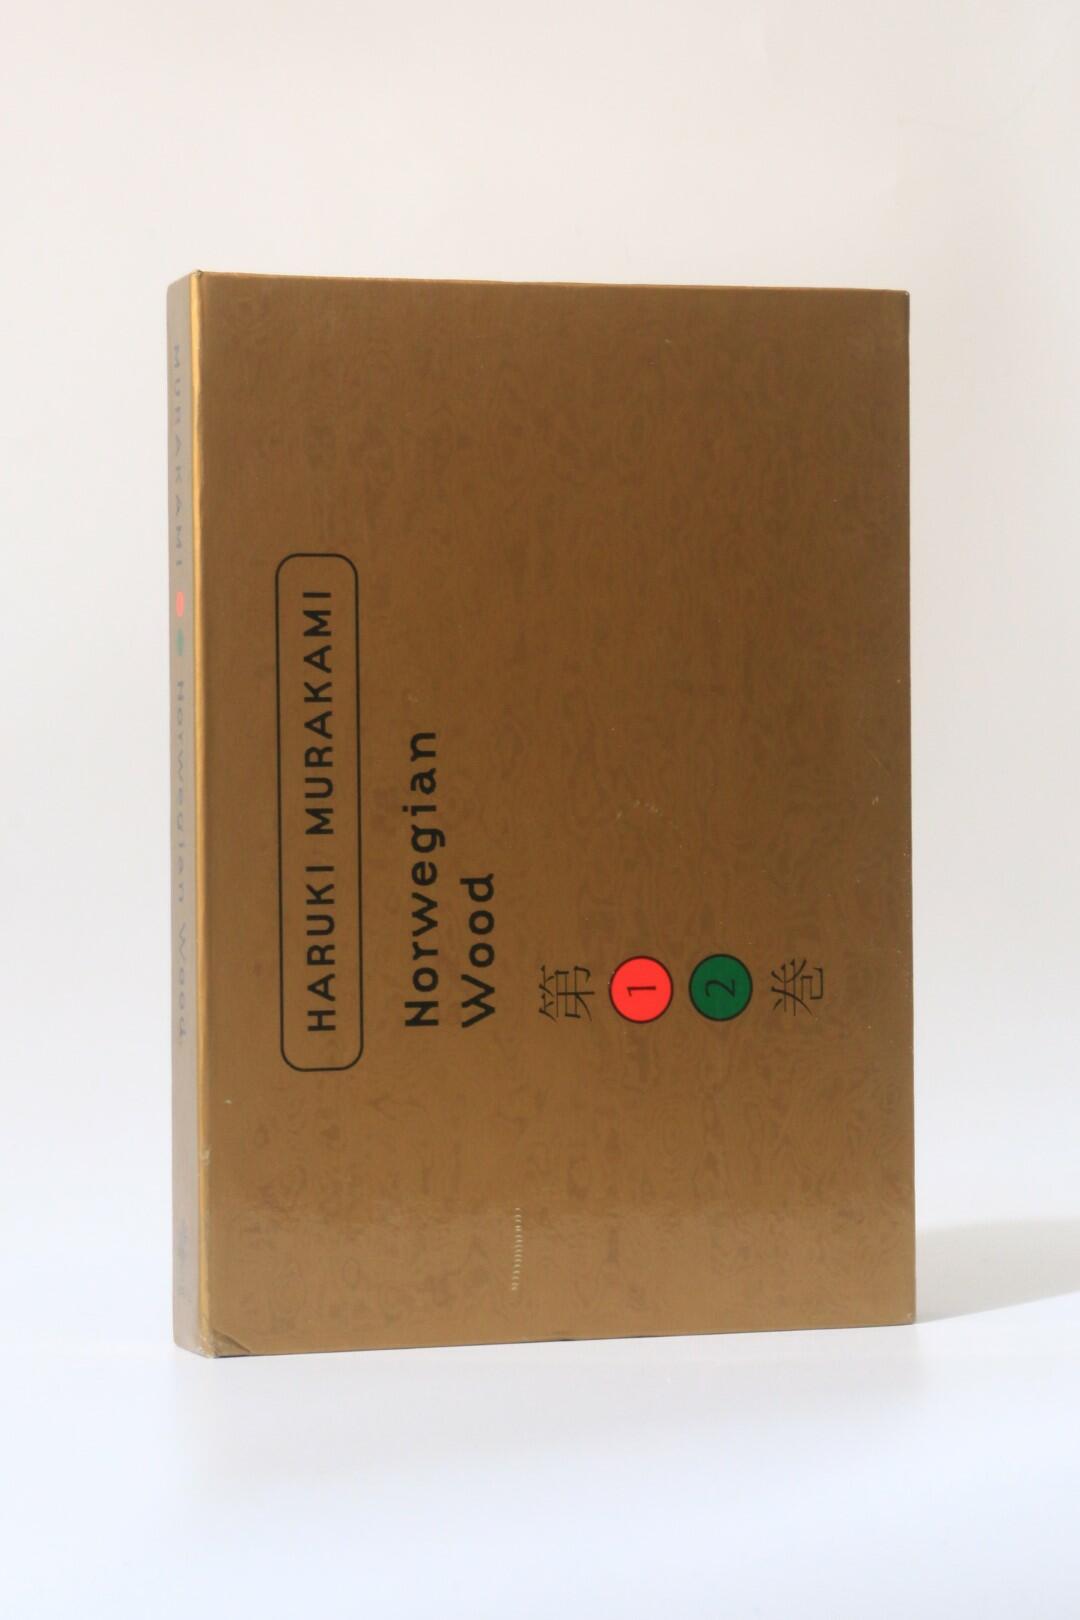 Haruki Murakami - Norwegian Wood - Harvill, 2000, First Edition.